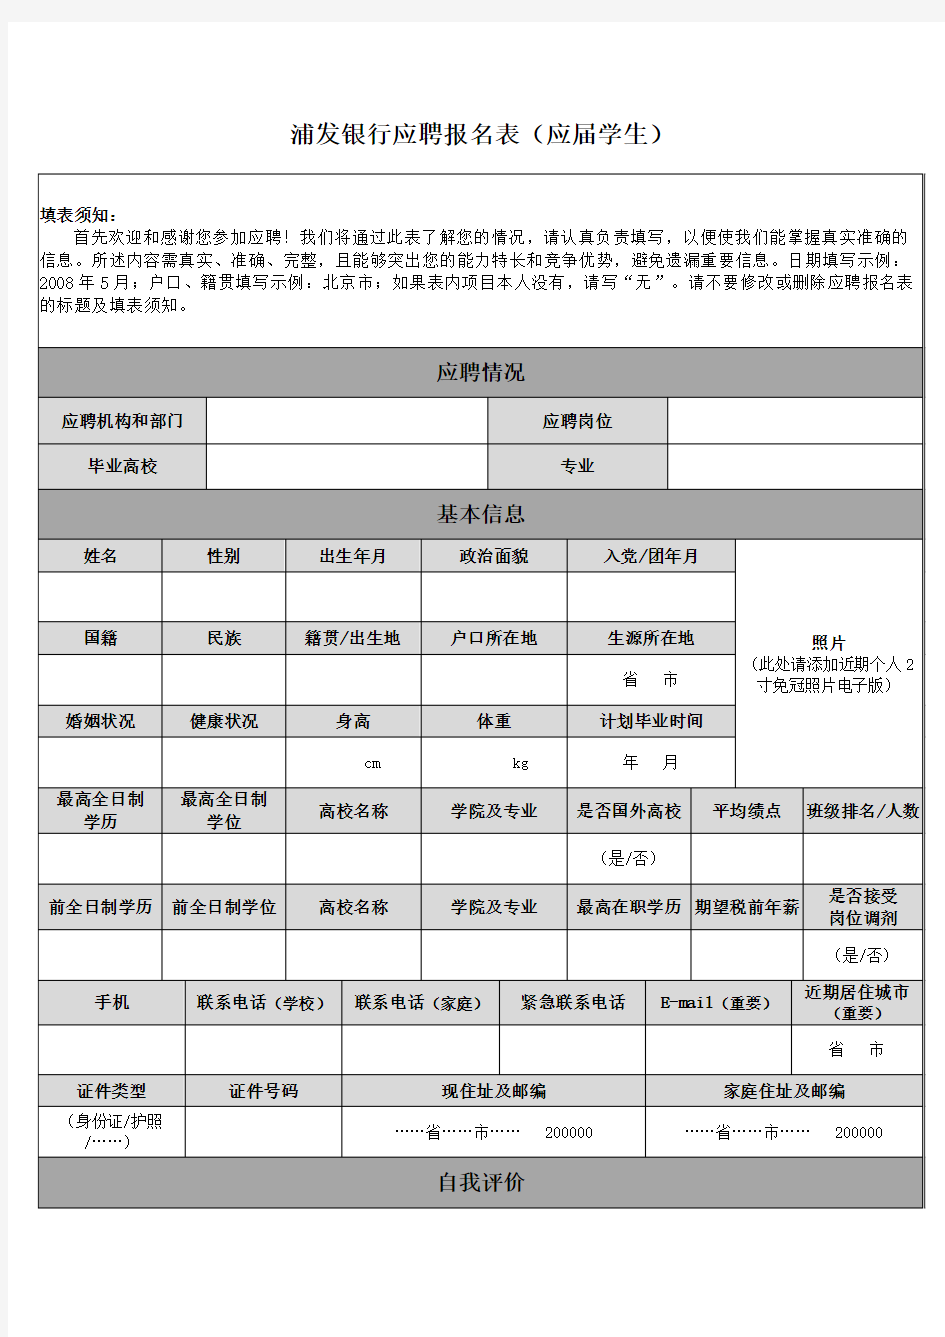 上海浦发银行清算作业部集中作业处应聘报名表(应届学生)